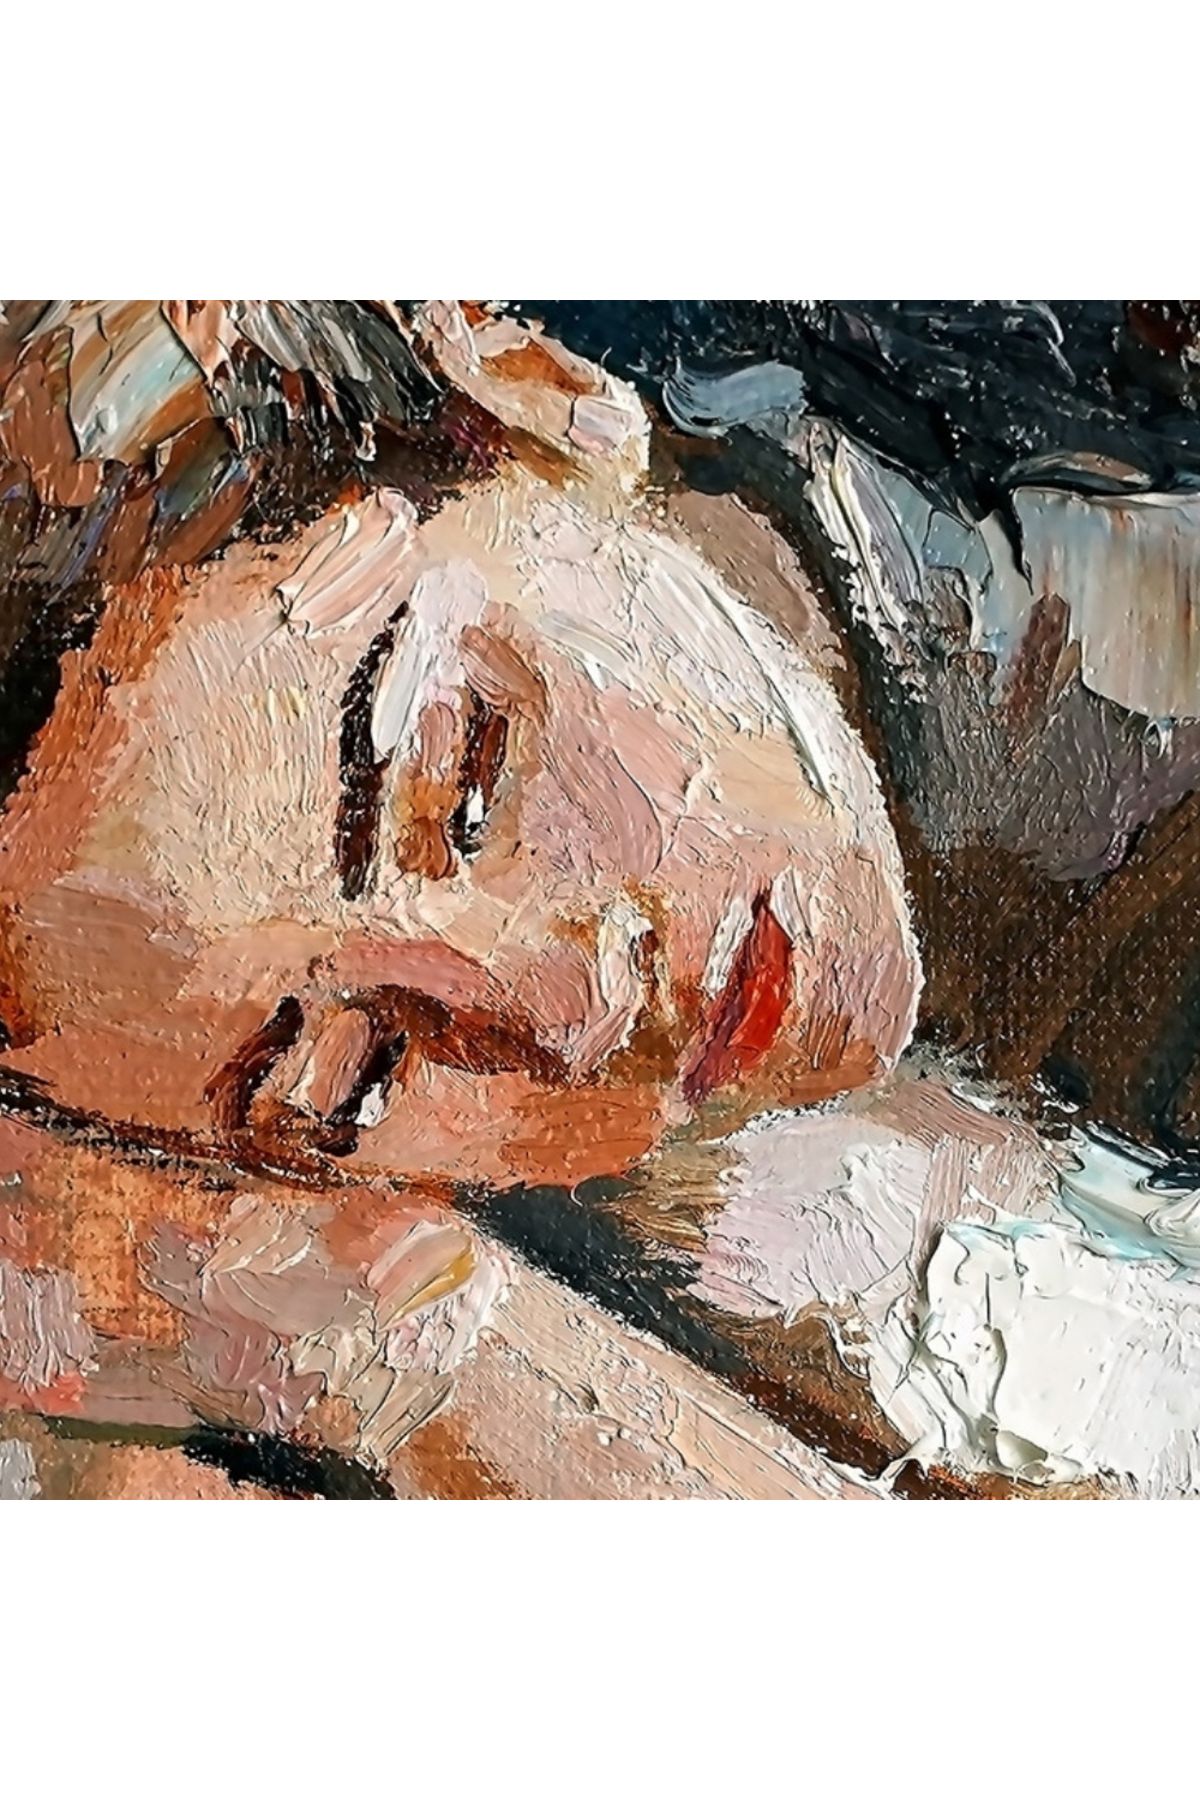 Karkissa Yağlı Boya Kadın Portresi Kanvas Tablo 50 x 70